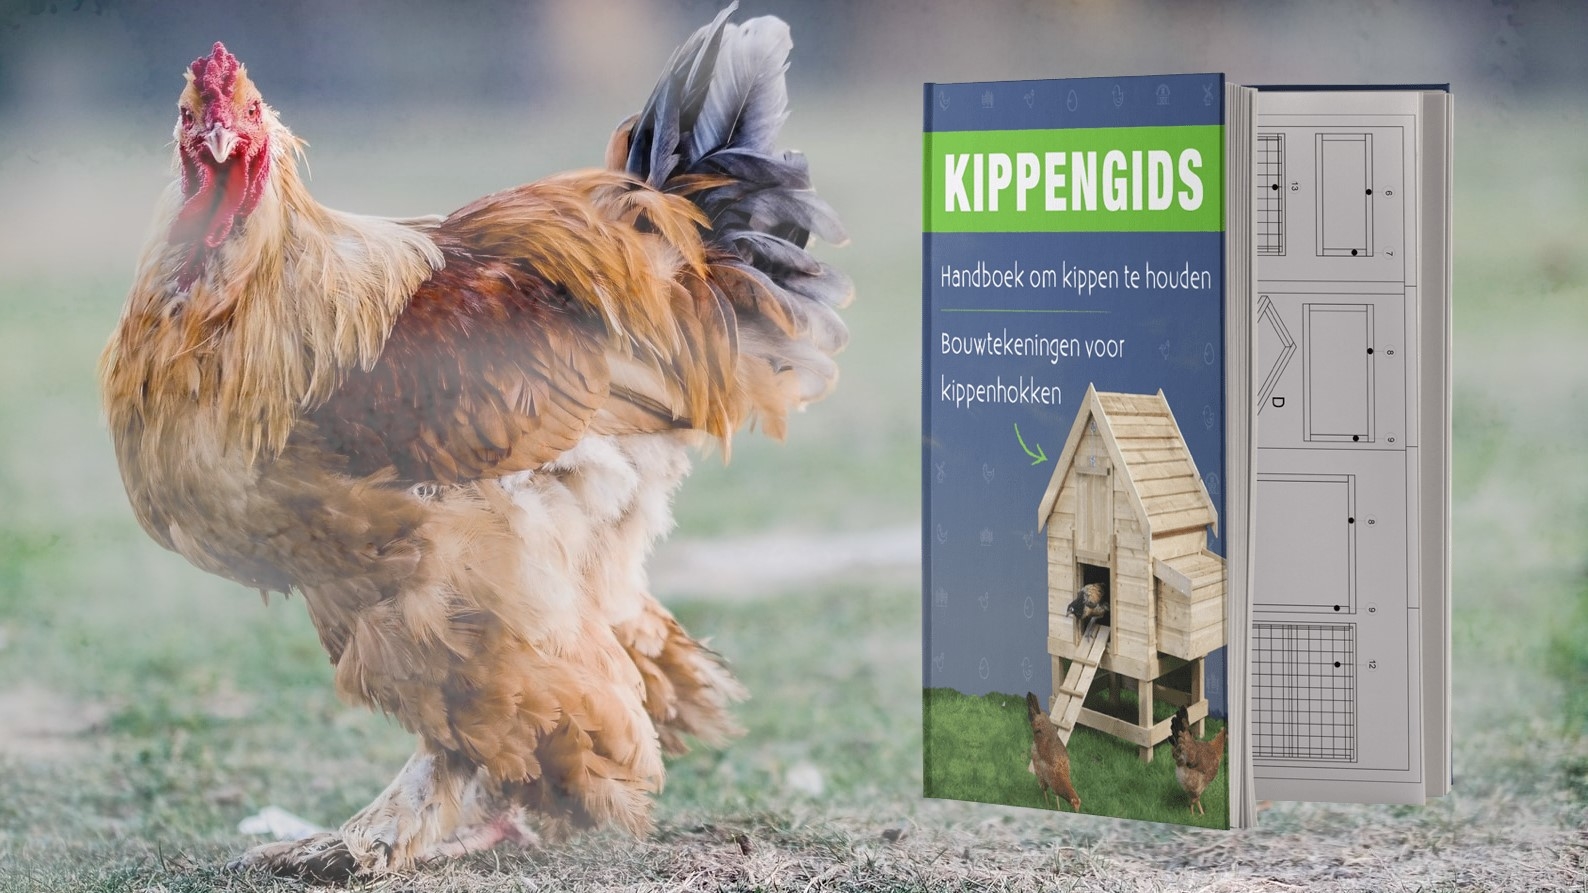 kippengids-bannerkippengids review - banner